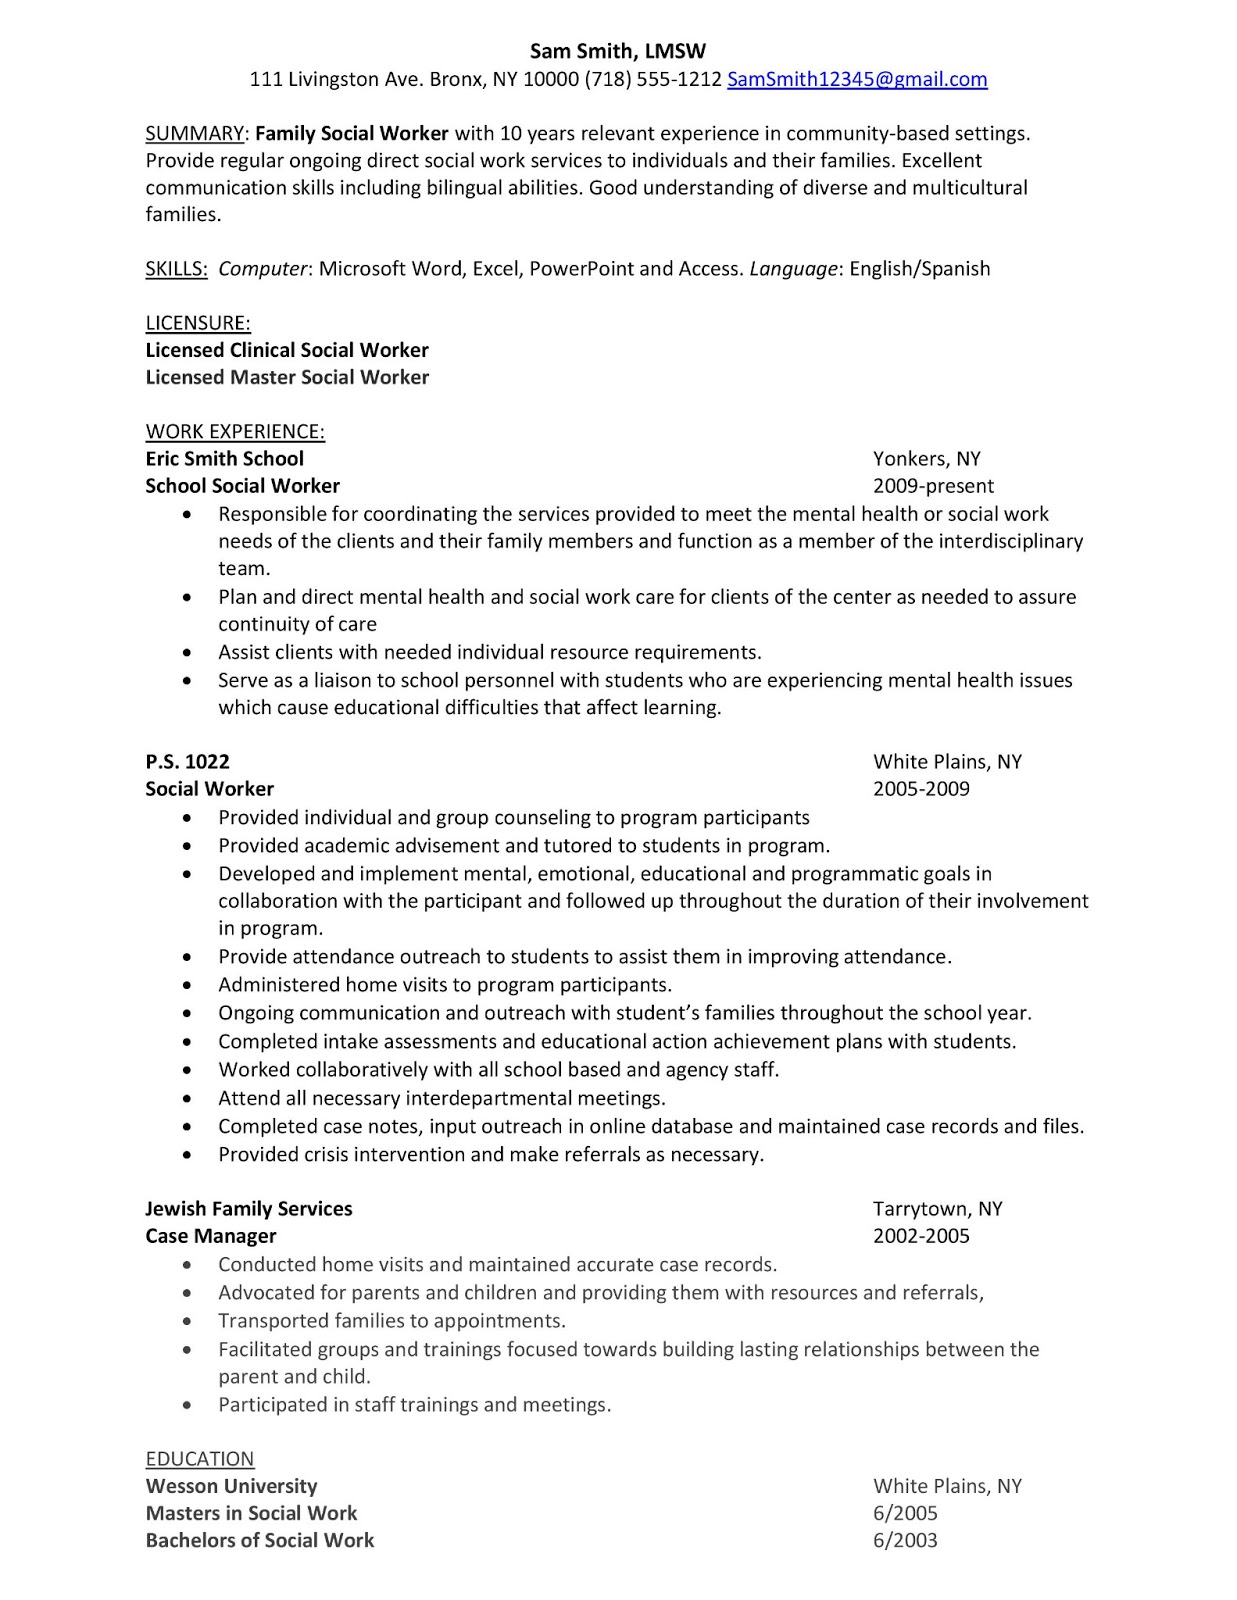 Sample Resume: Family Social Worker